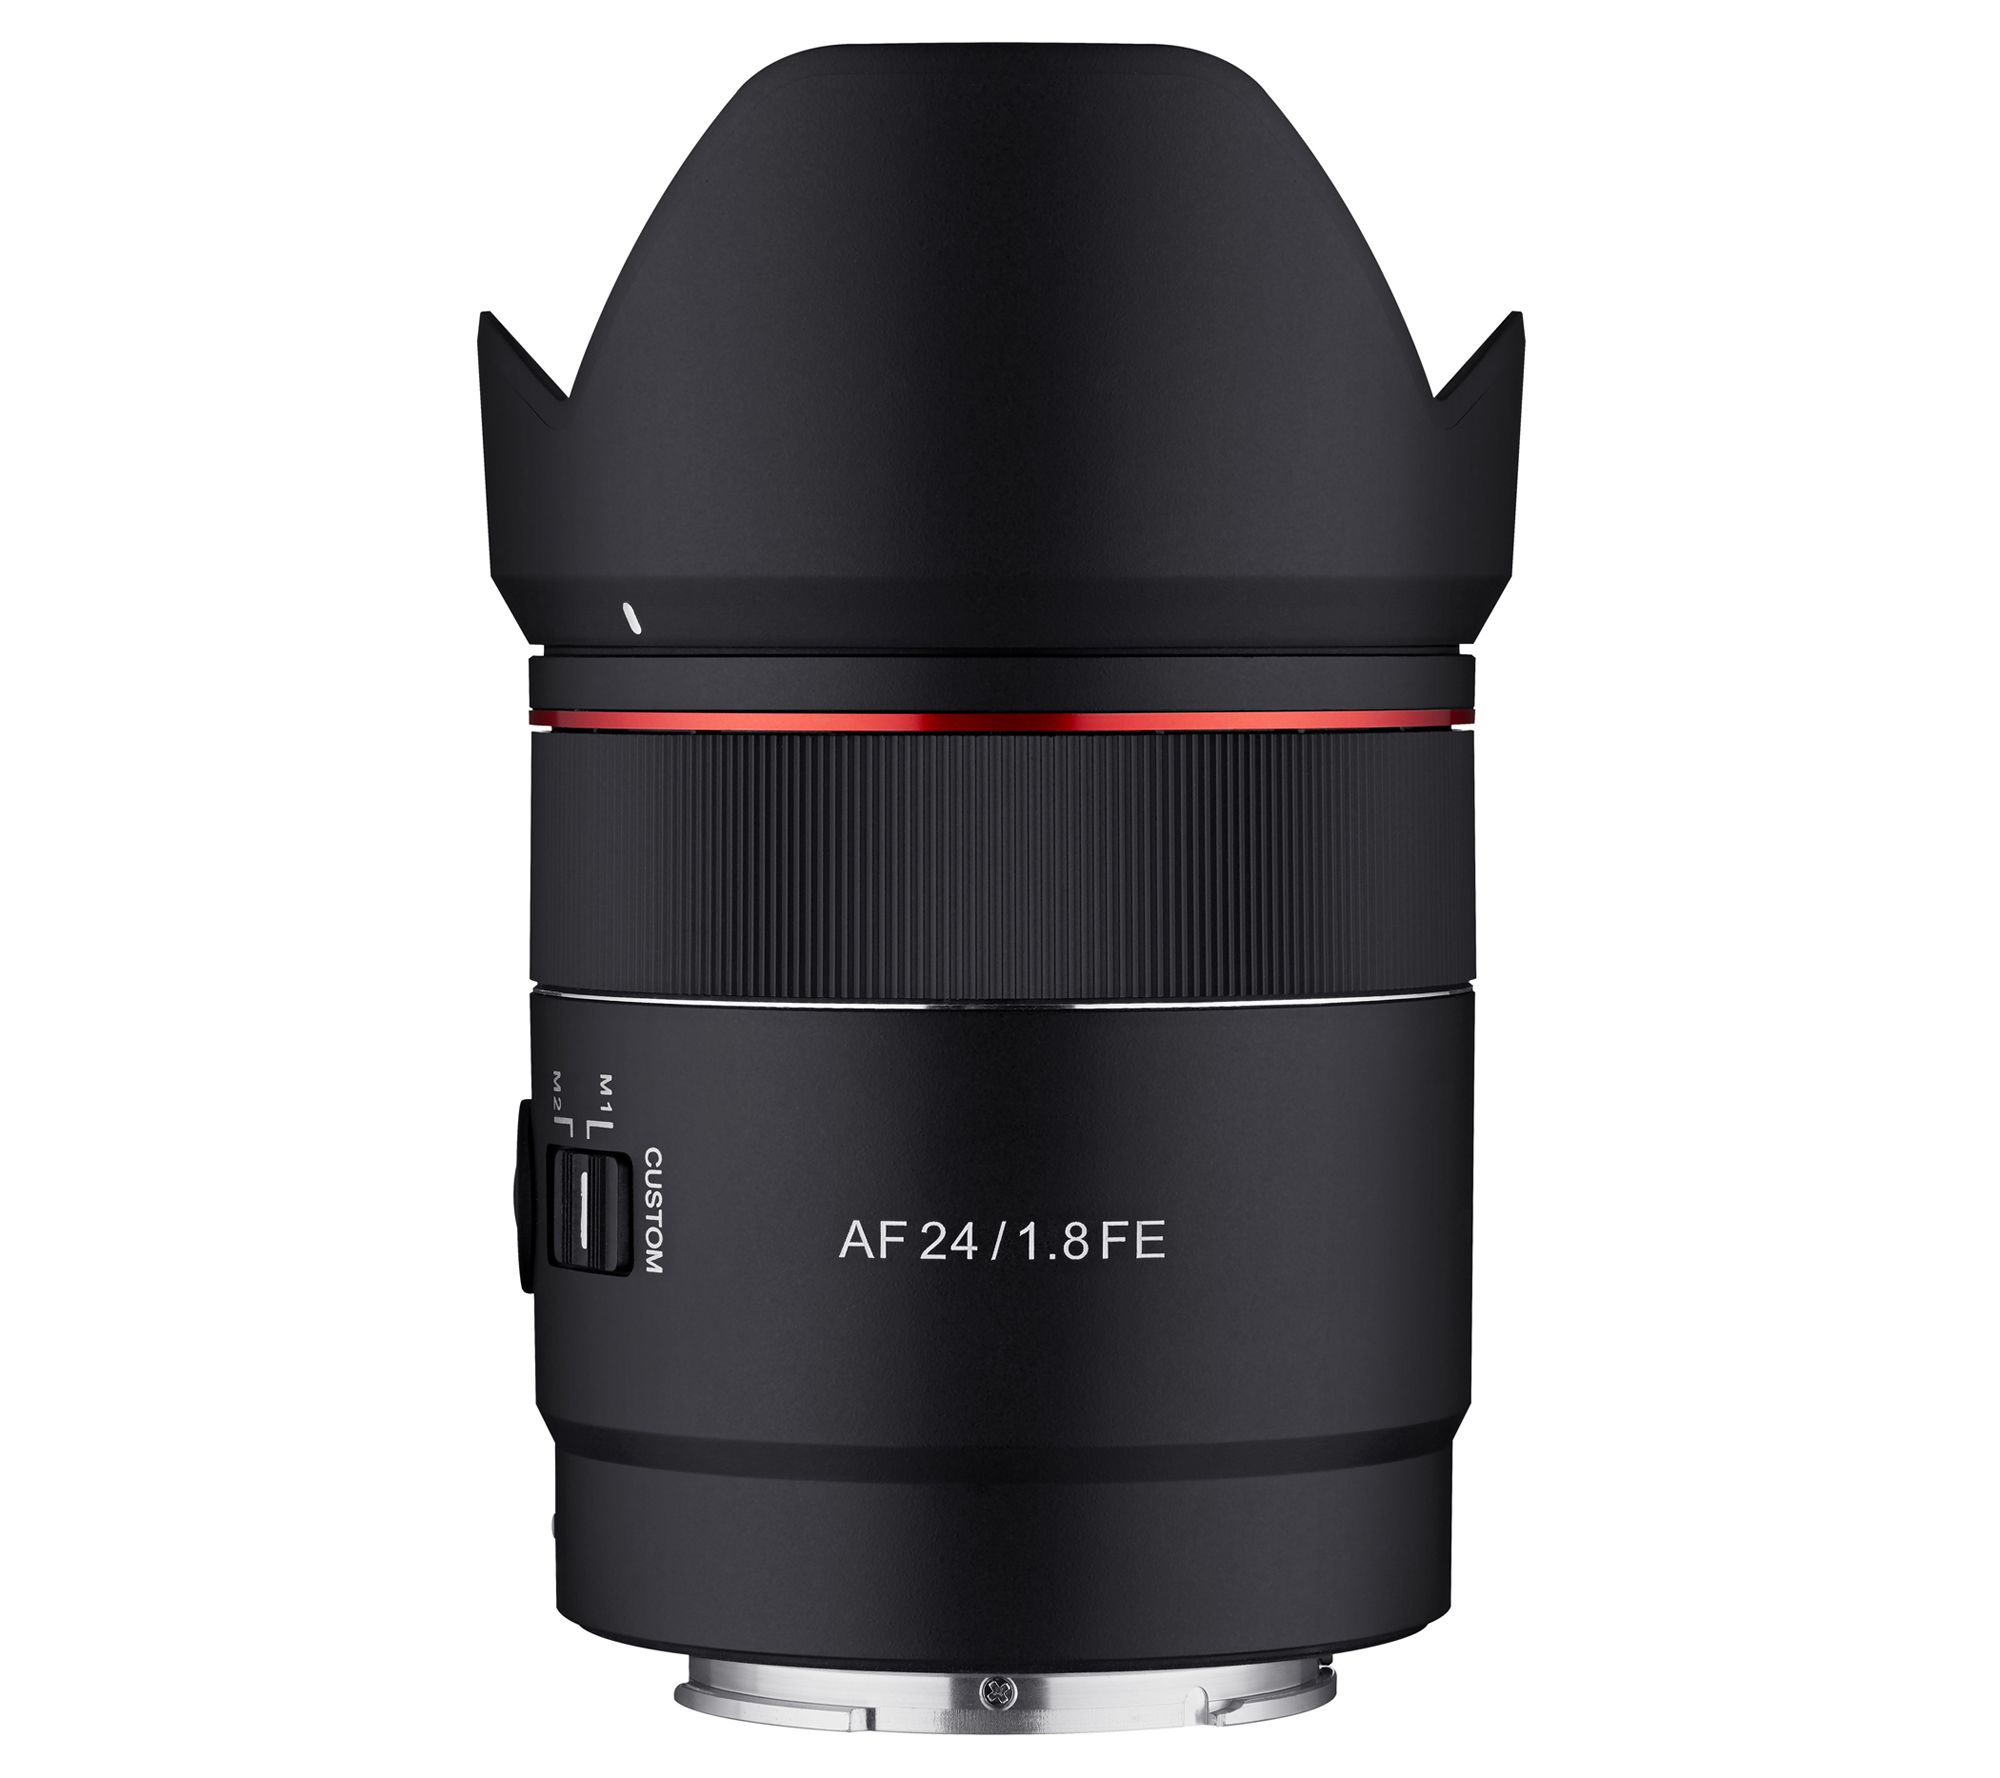 Rokinon 24mm F1.8 Auto Focus Full Frame Lens for Sony E $361.18